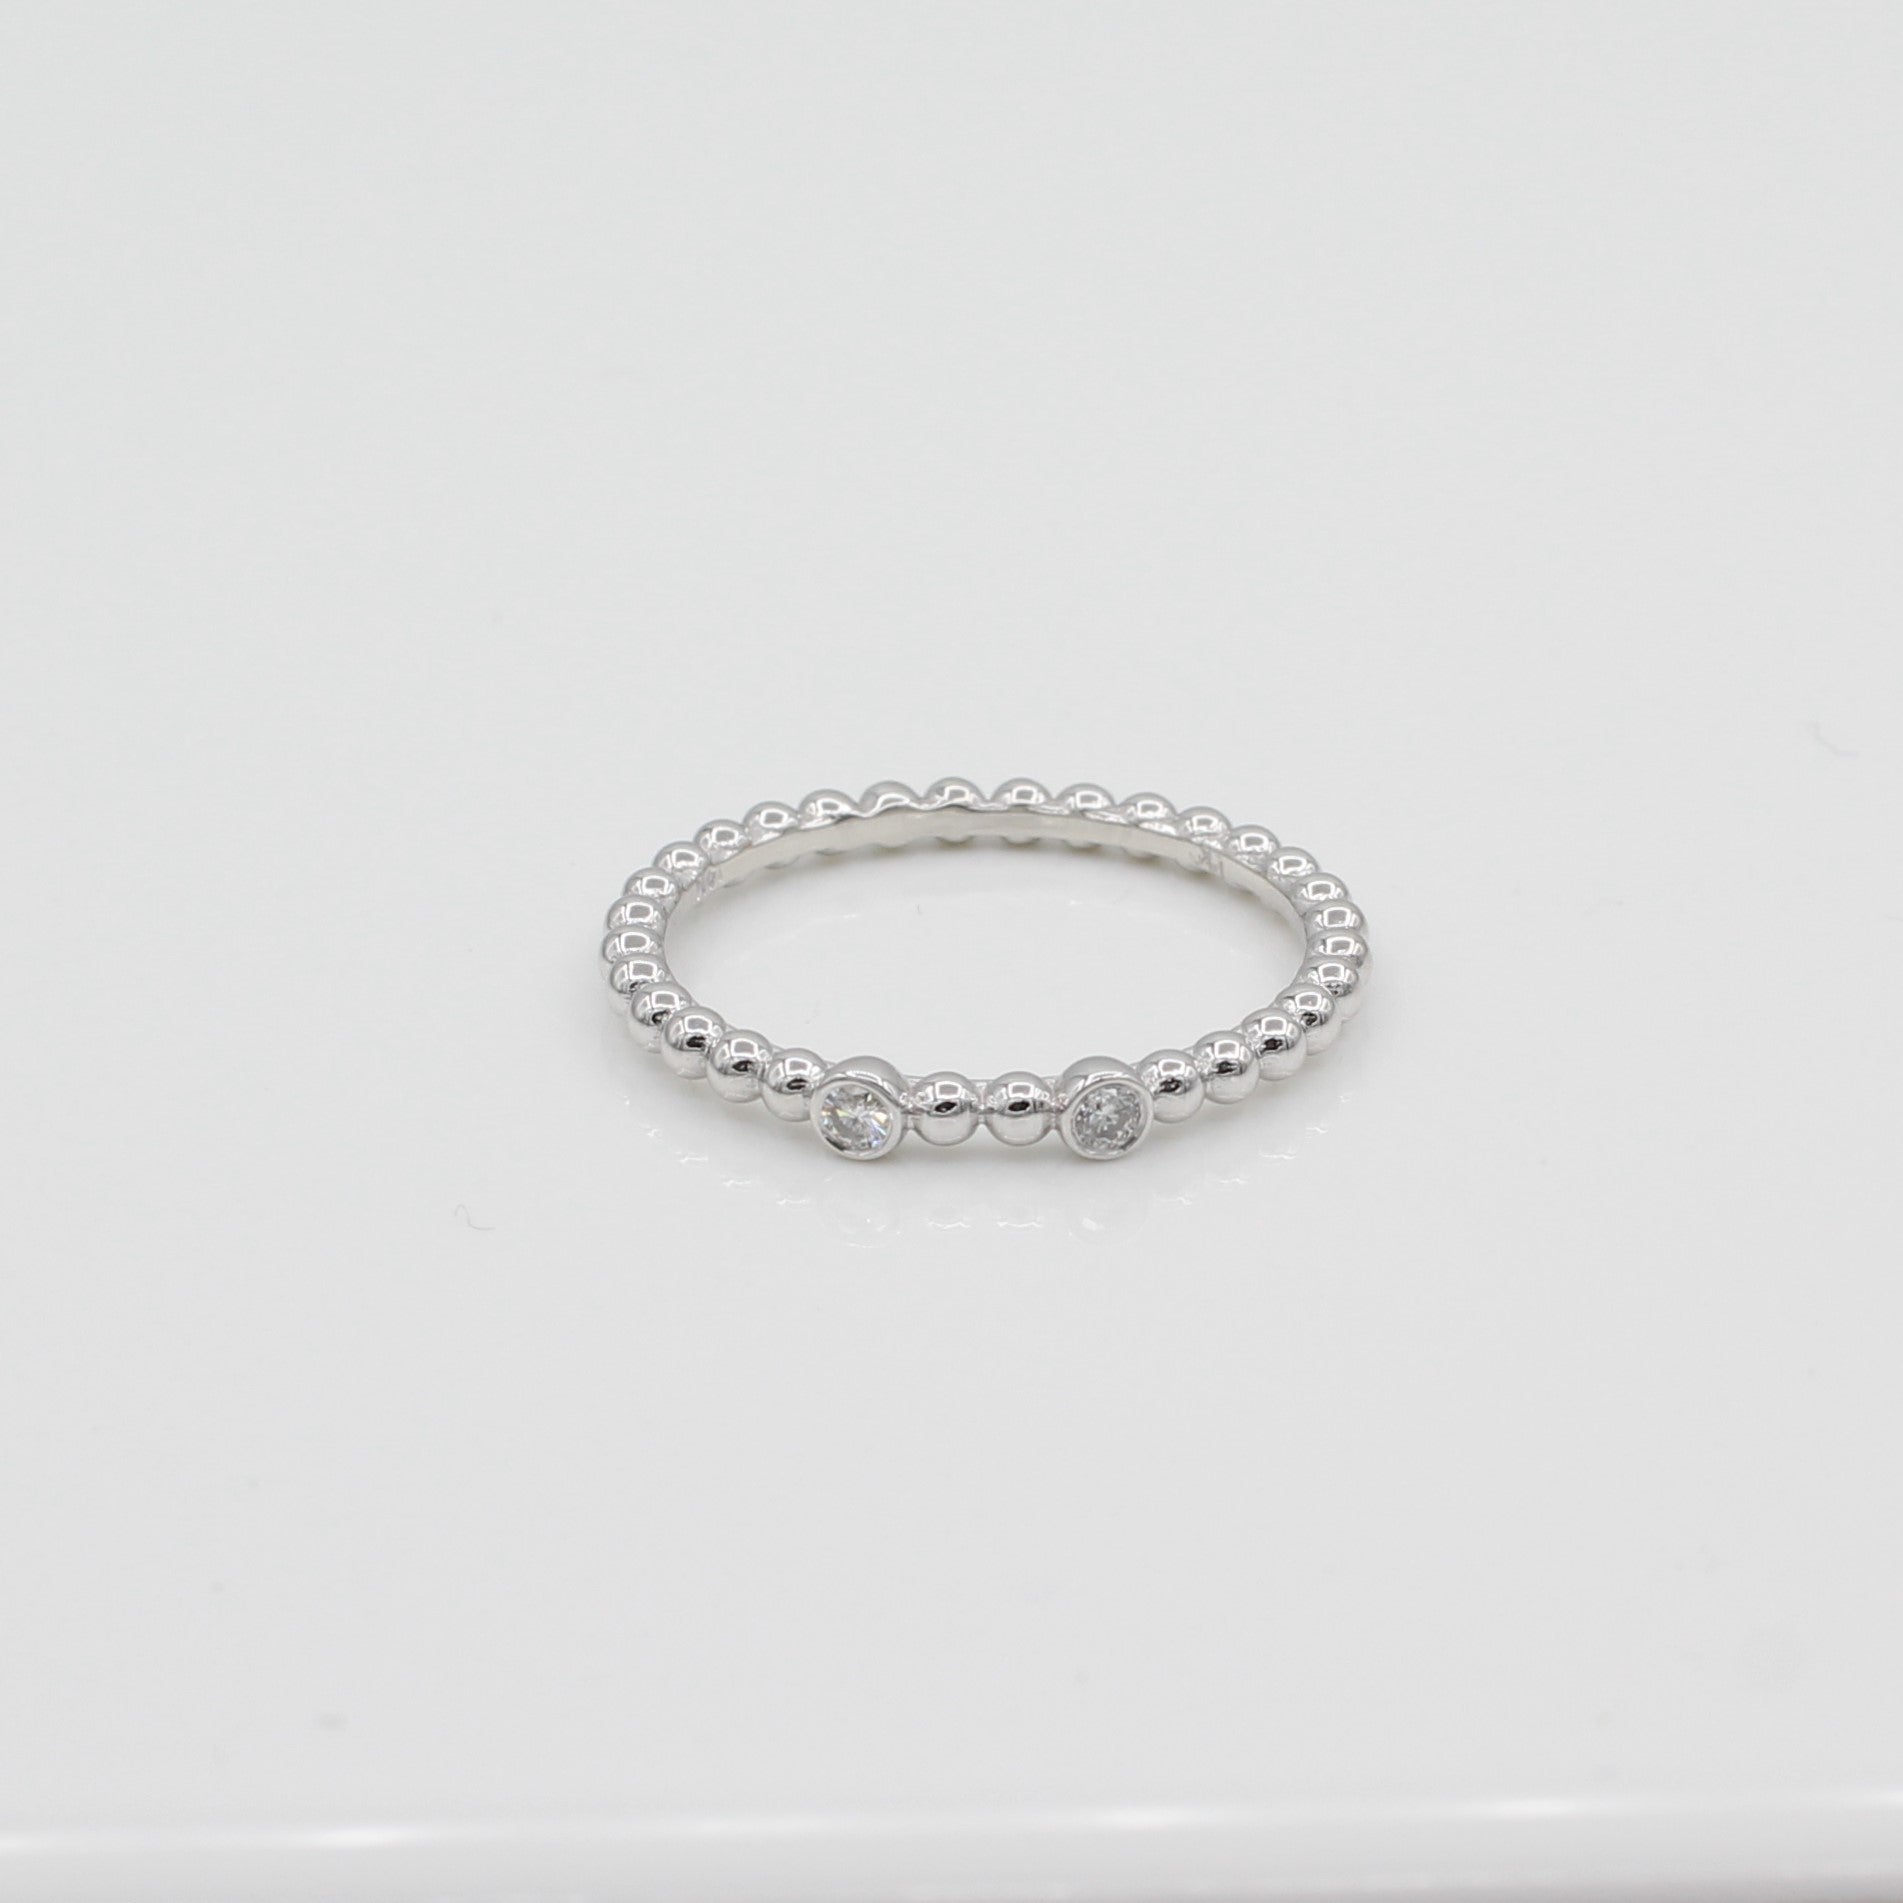 14k White Gold Double Bezel-Set Diamond Beaded Ring, front view highlighting both bezel-set diamonds. 